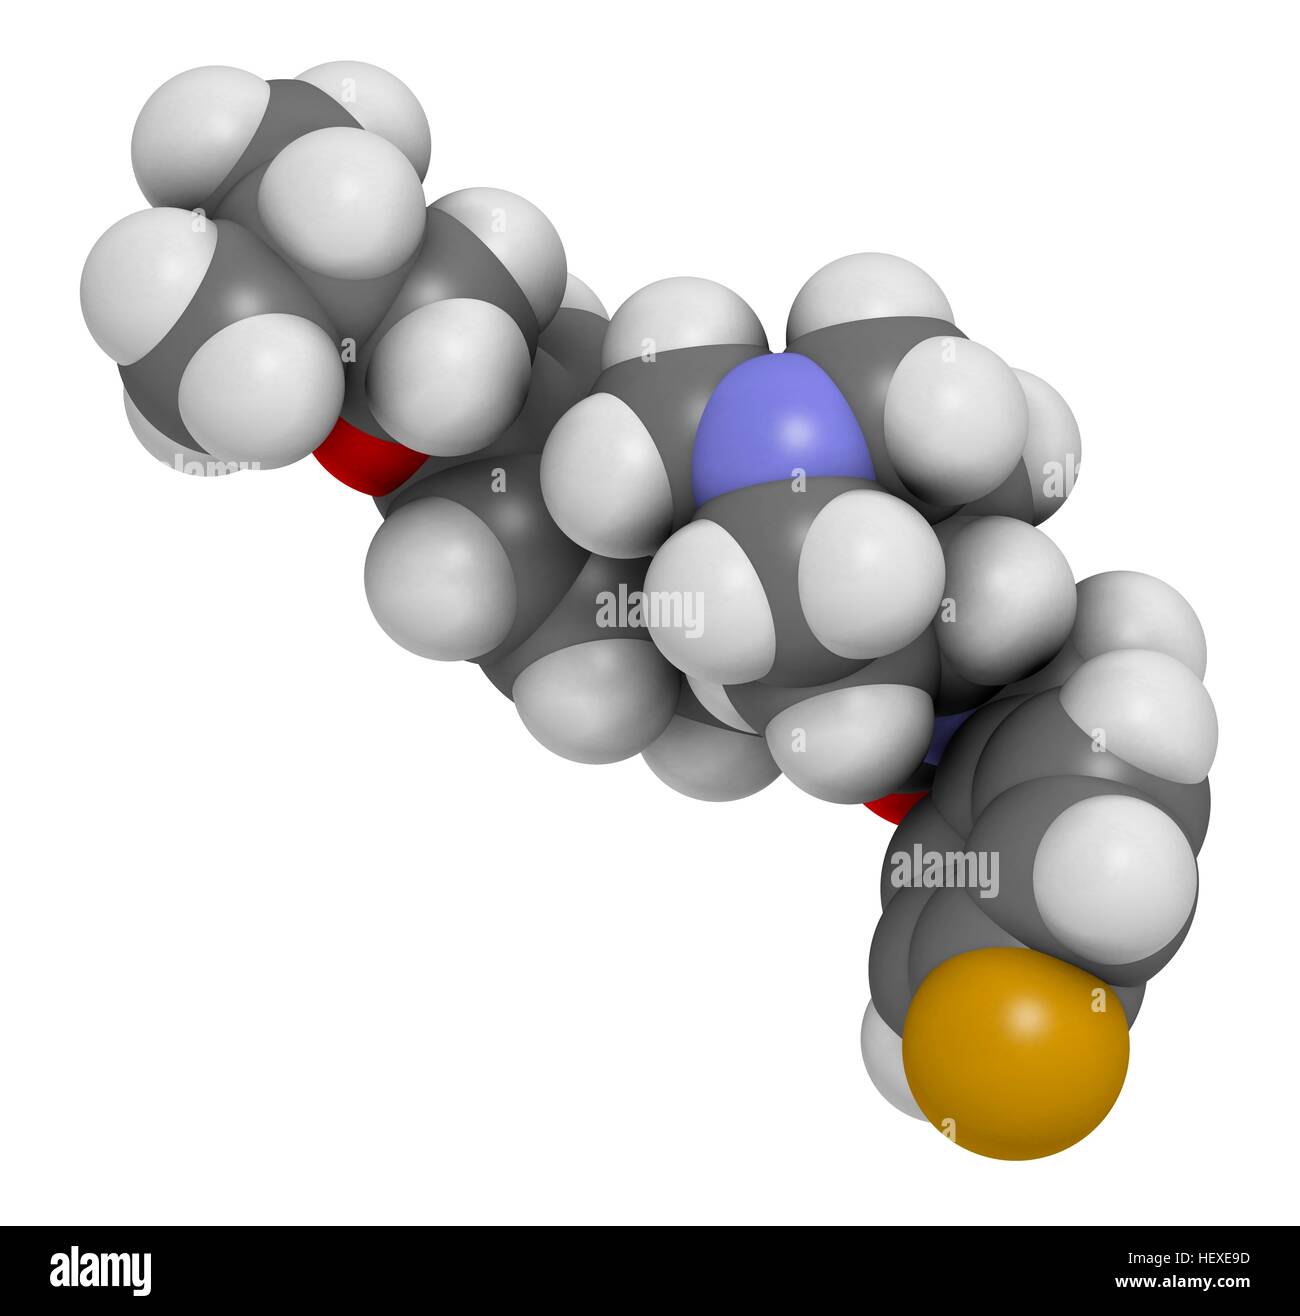 Pimavanserin atypischen antipsychotischen Medikamentenmolekül, Computer Bild. Atome werden als Kugeln mit konventionellen Farbkodierung dargestellt: Wasserstoff (weiß), Kohlenstoff (grau), Stickstoff (blau), Sauerstoff (rot), Fluor (Gold). Stockfoto